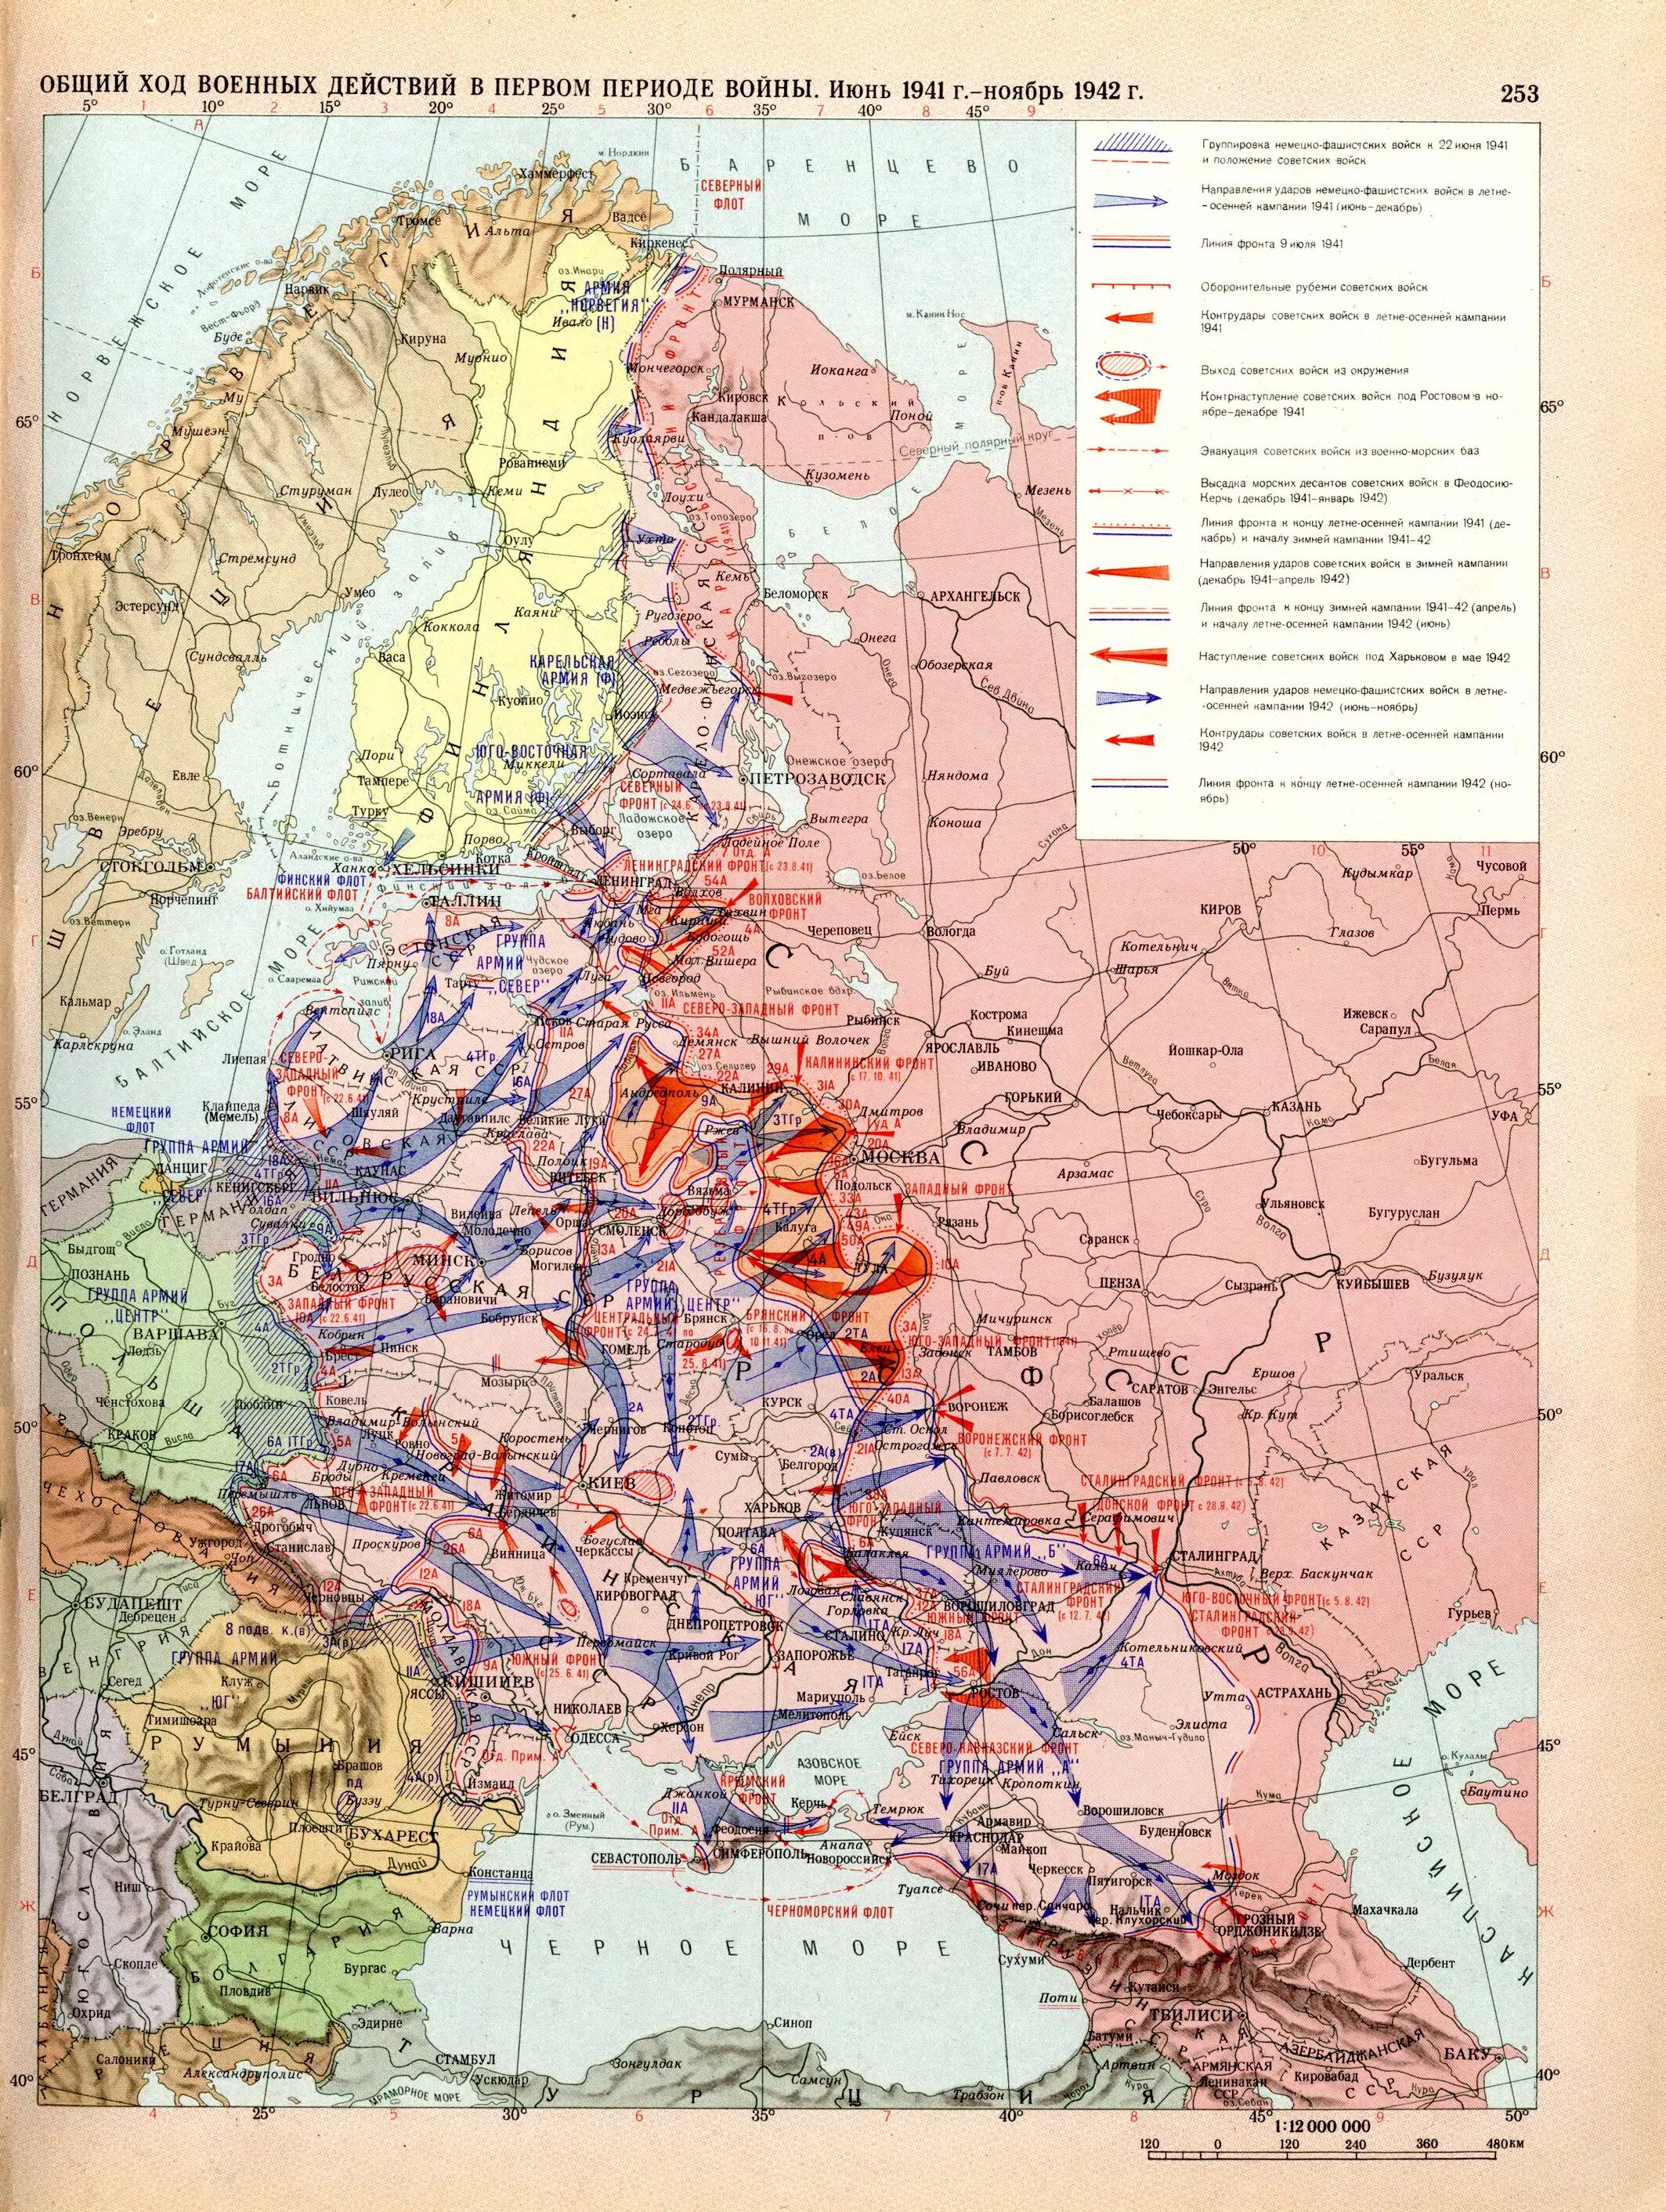 Общий ход военных действий в 1941 1942 карта. Карта восточного фронта второй мировой войны 1941.